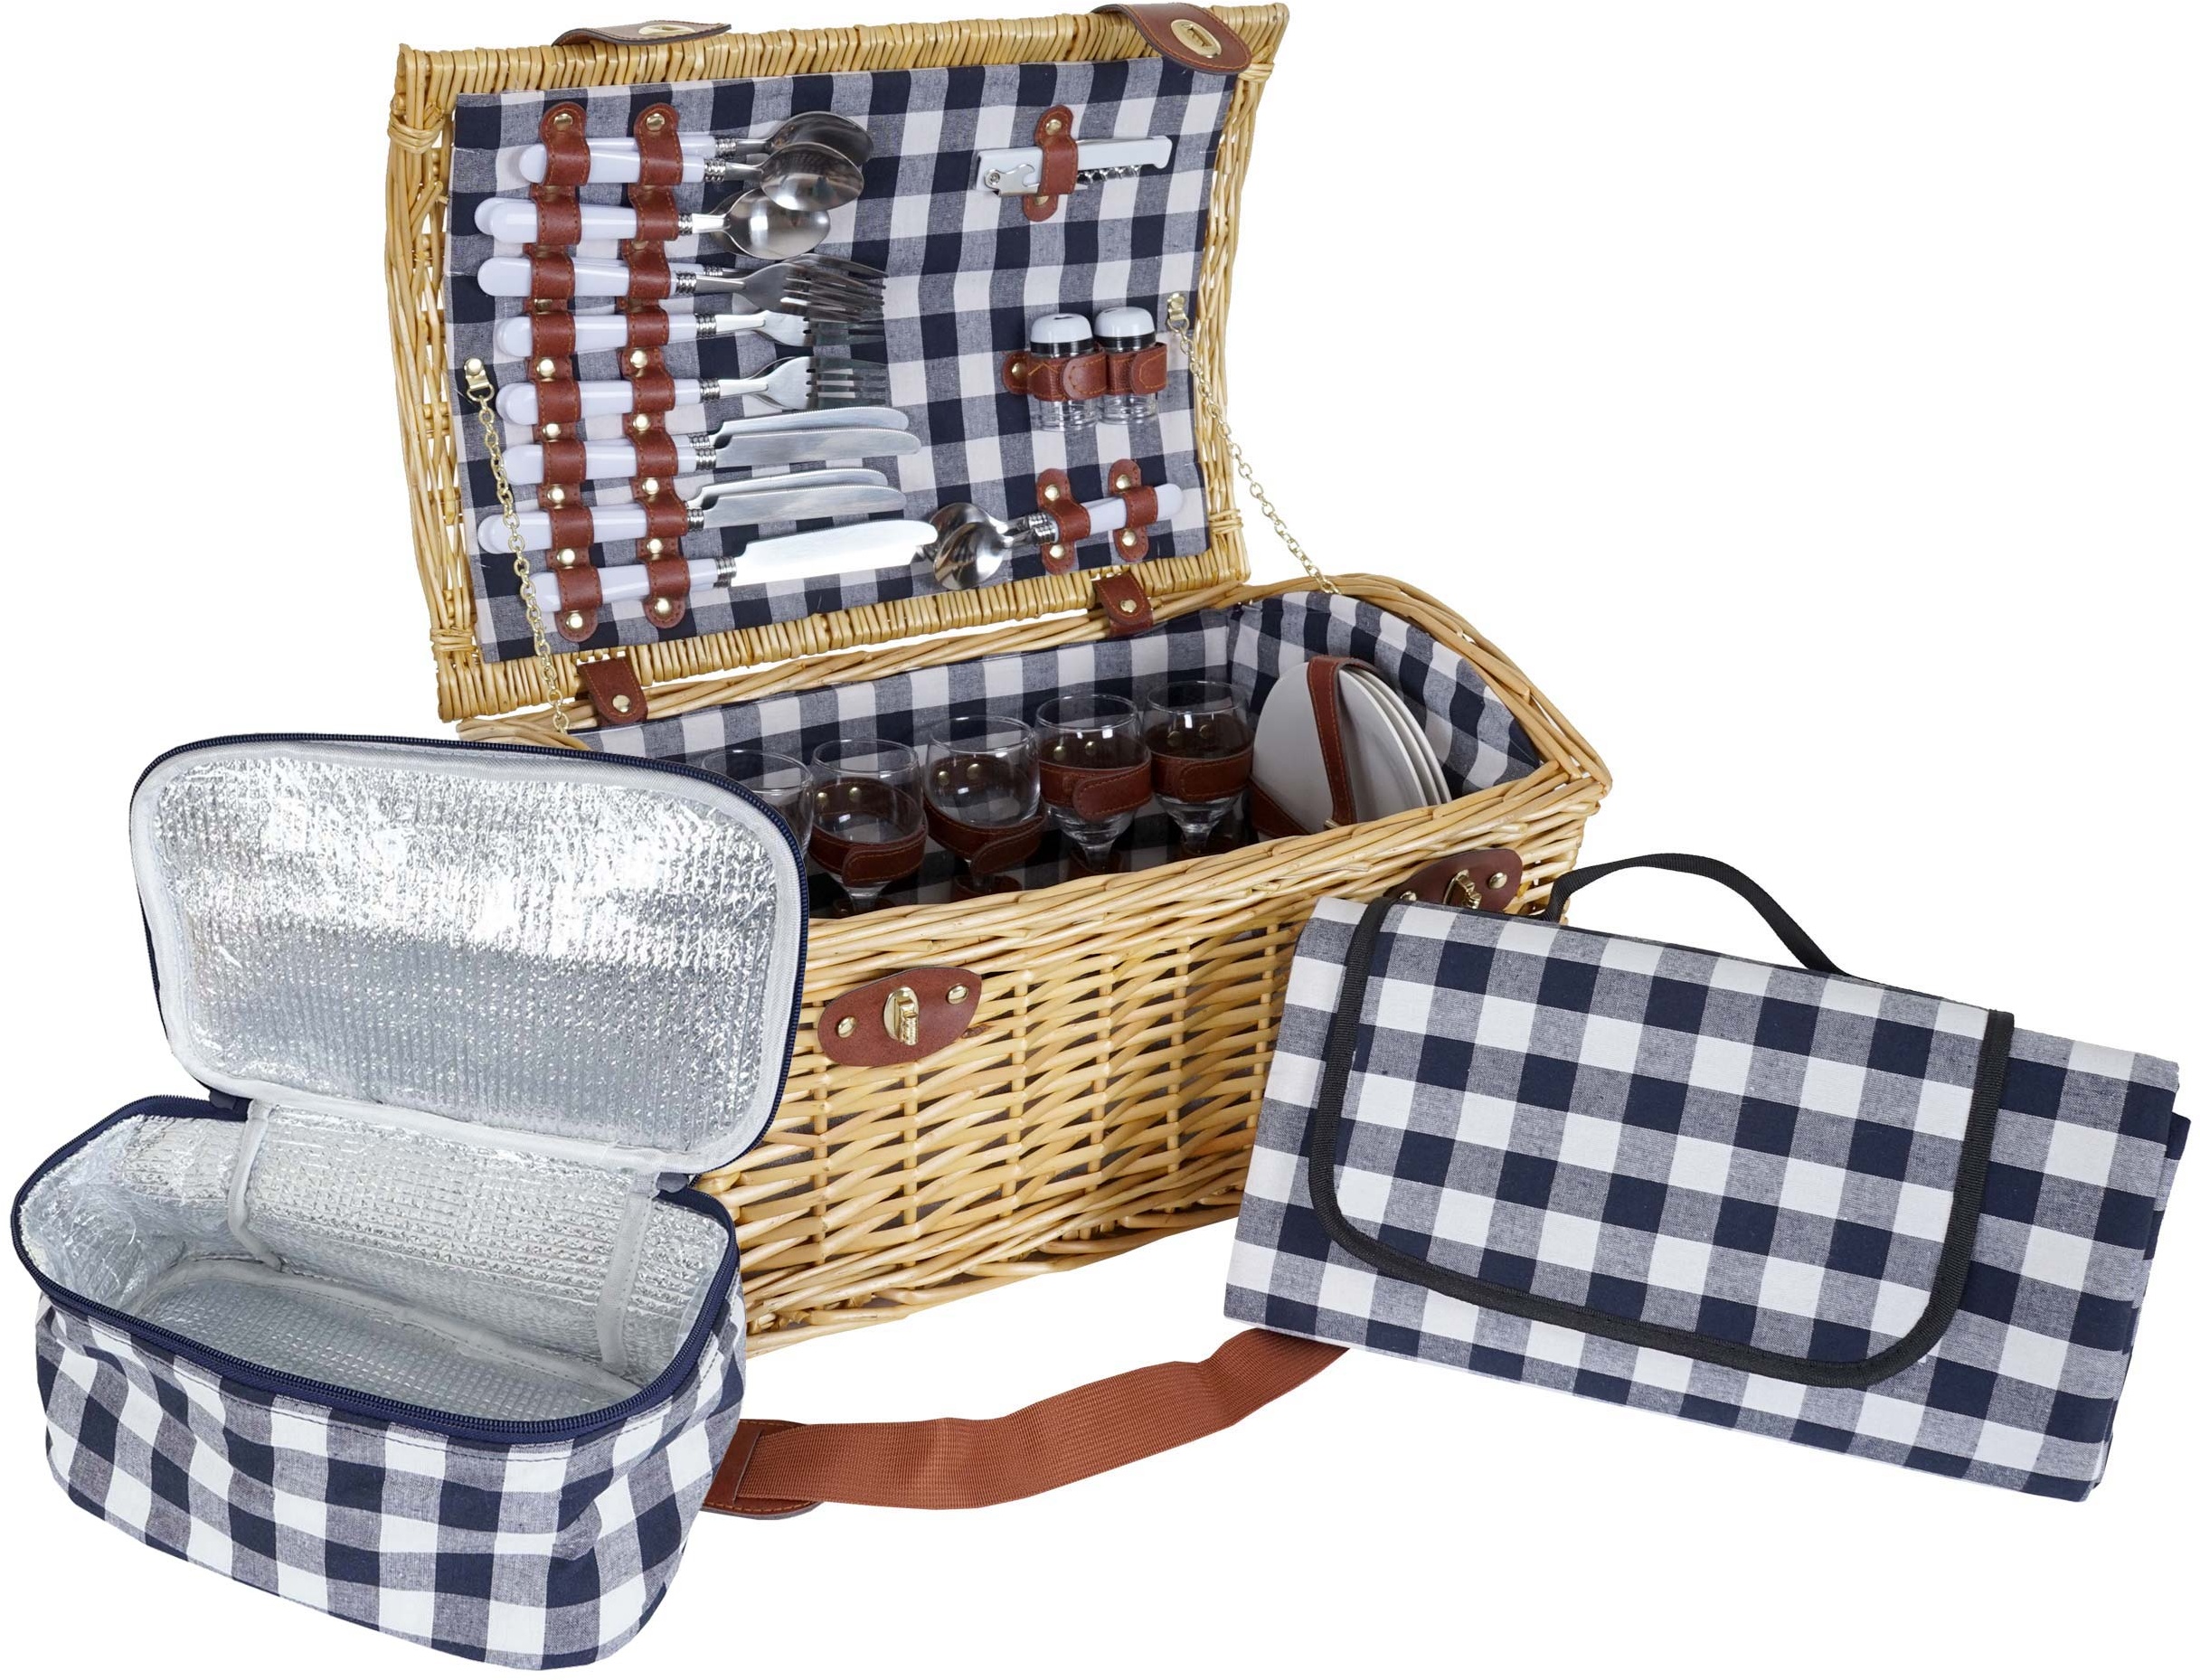 Picknickkorb-Set HWC-B23 f√or 6 Personen, Weiden-Korb Picknickdecke, Porzellan Glas Edelstahl, blau-wei√ü